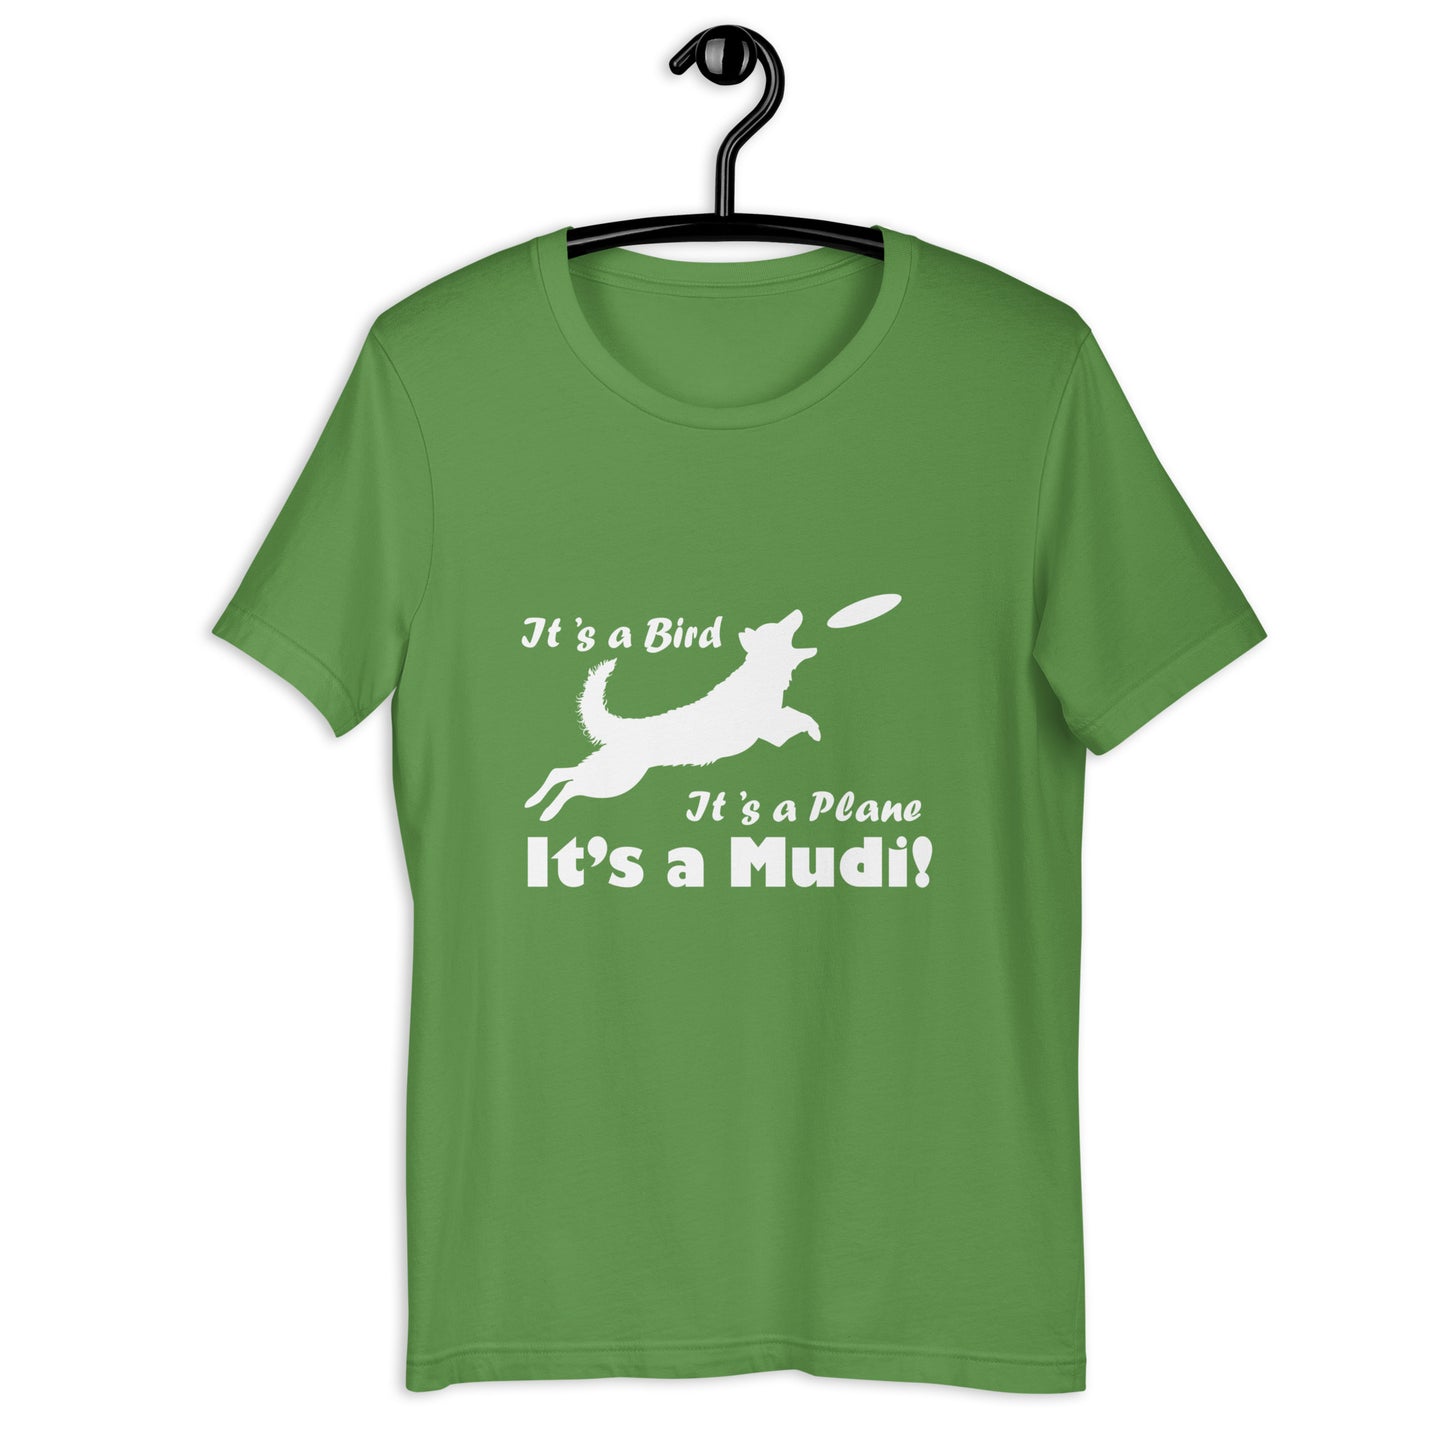 ITS A MUDI - Unisex t-shirt